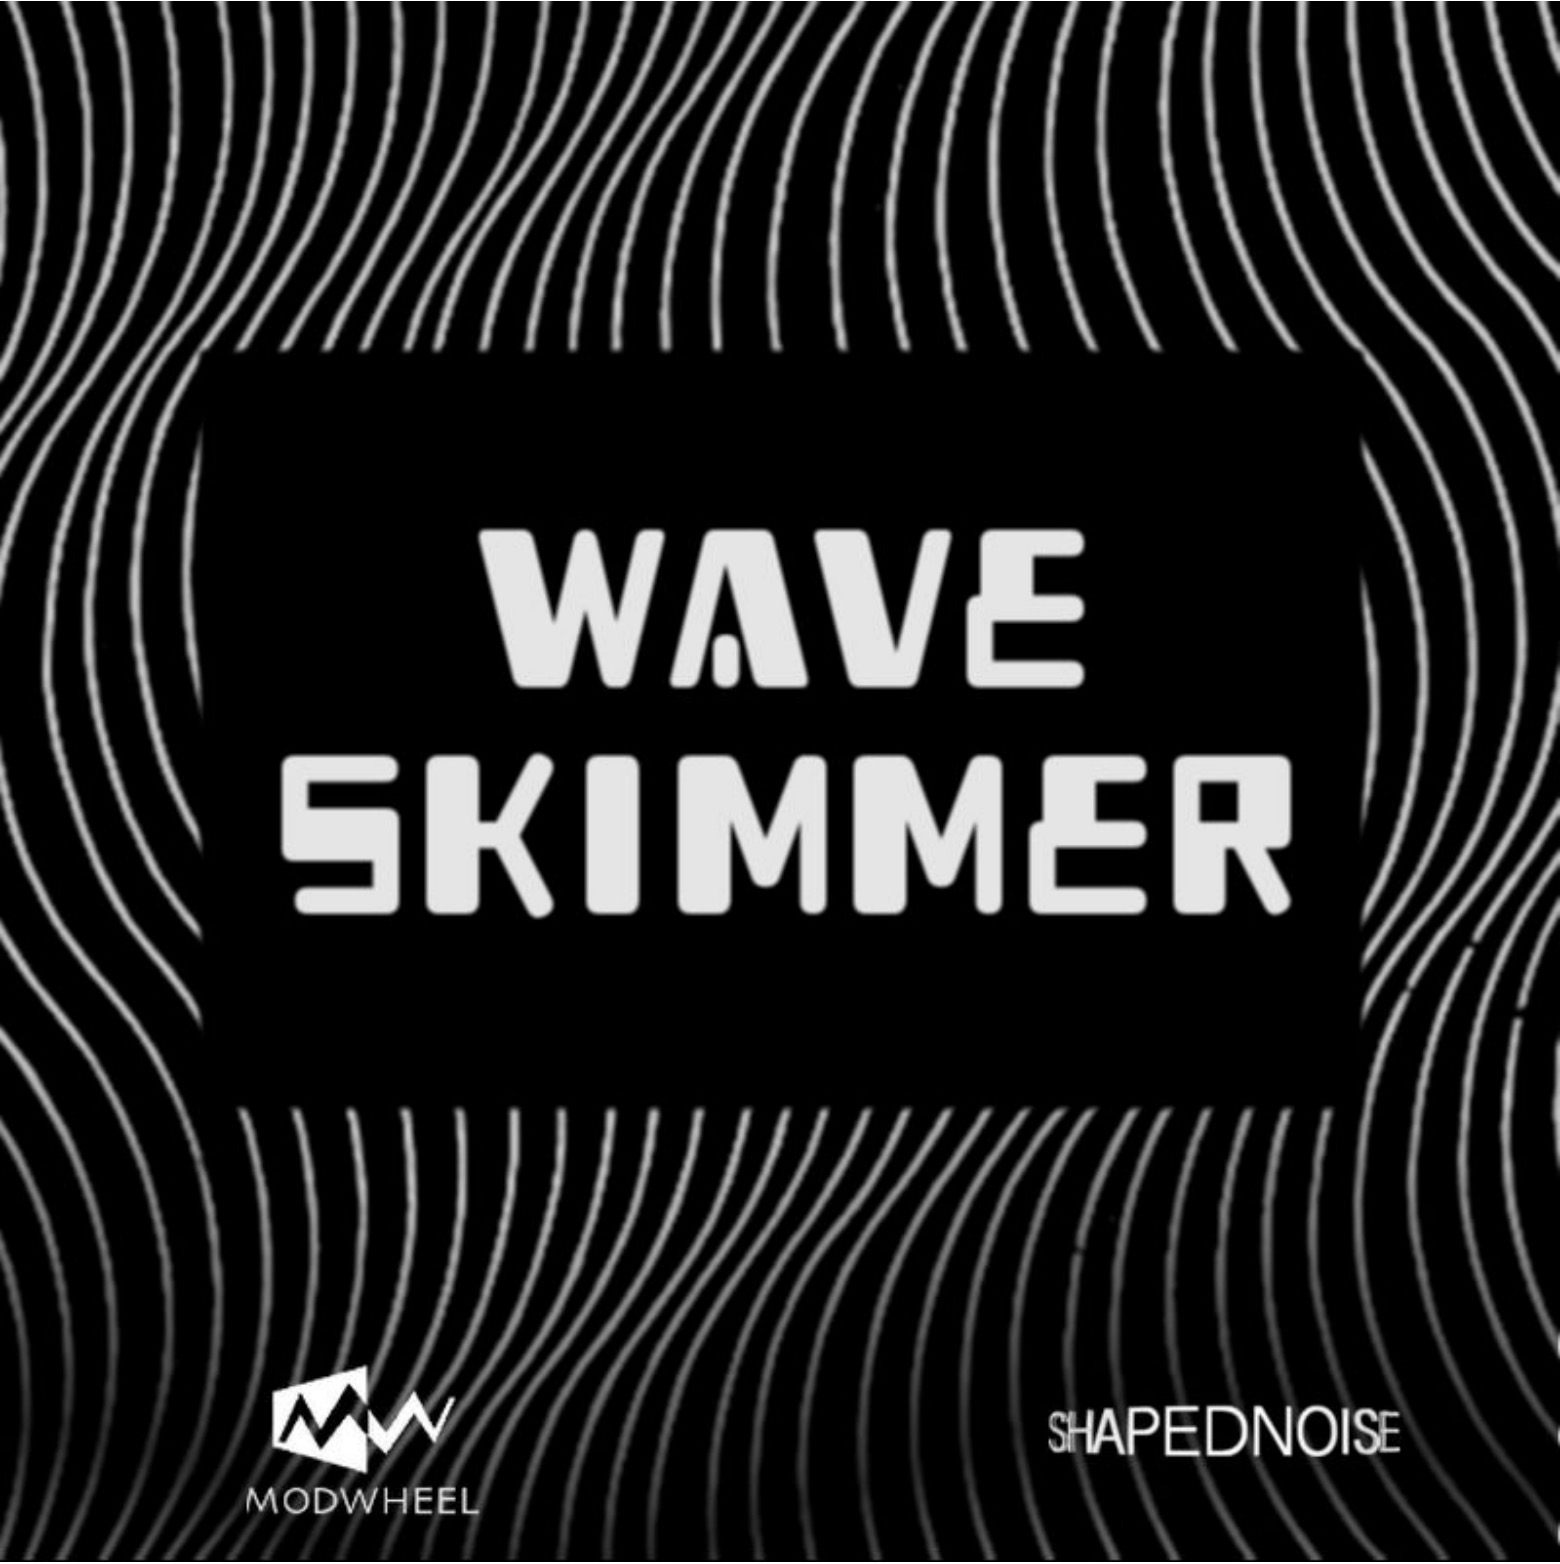 Waveskimmer by Modwheel Featured 2